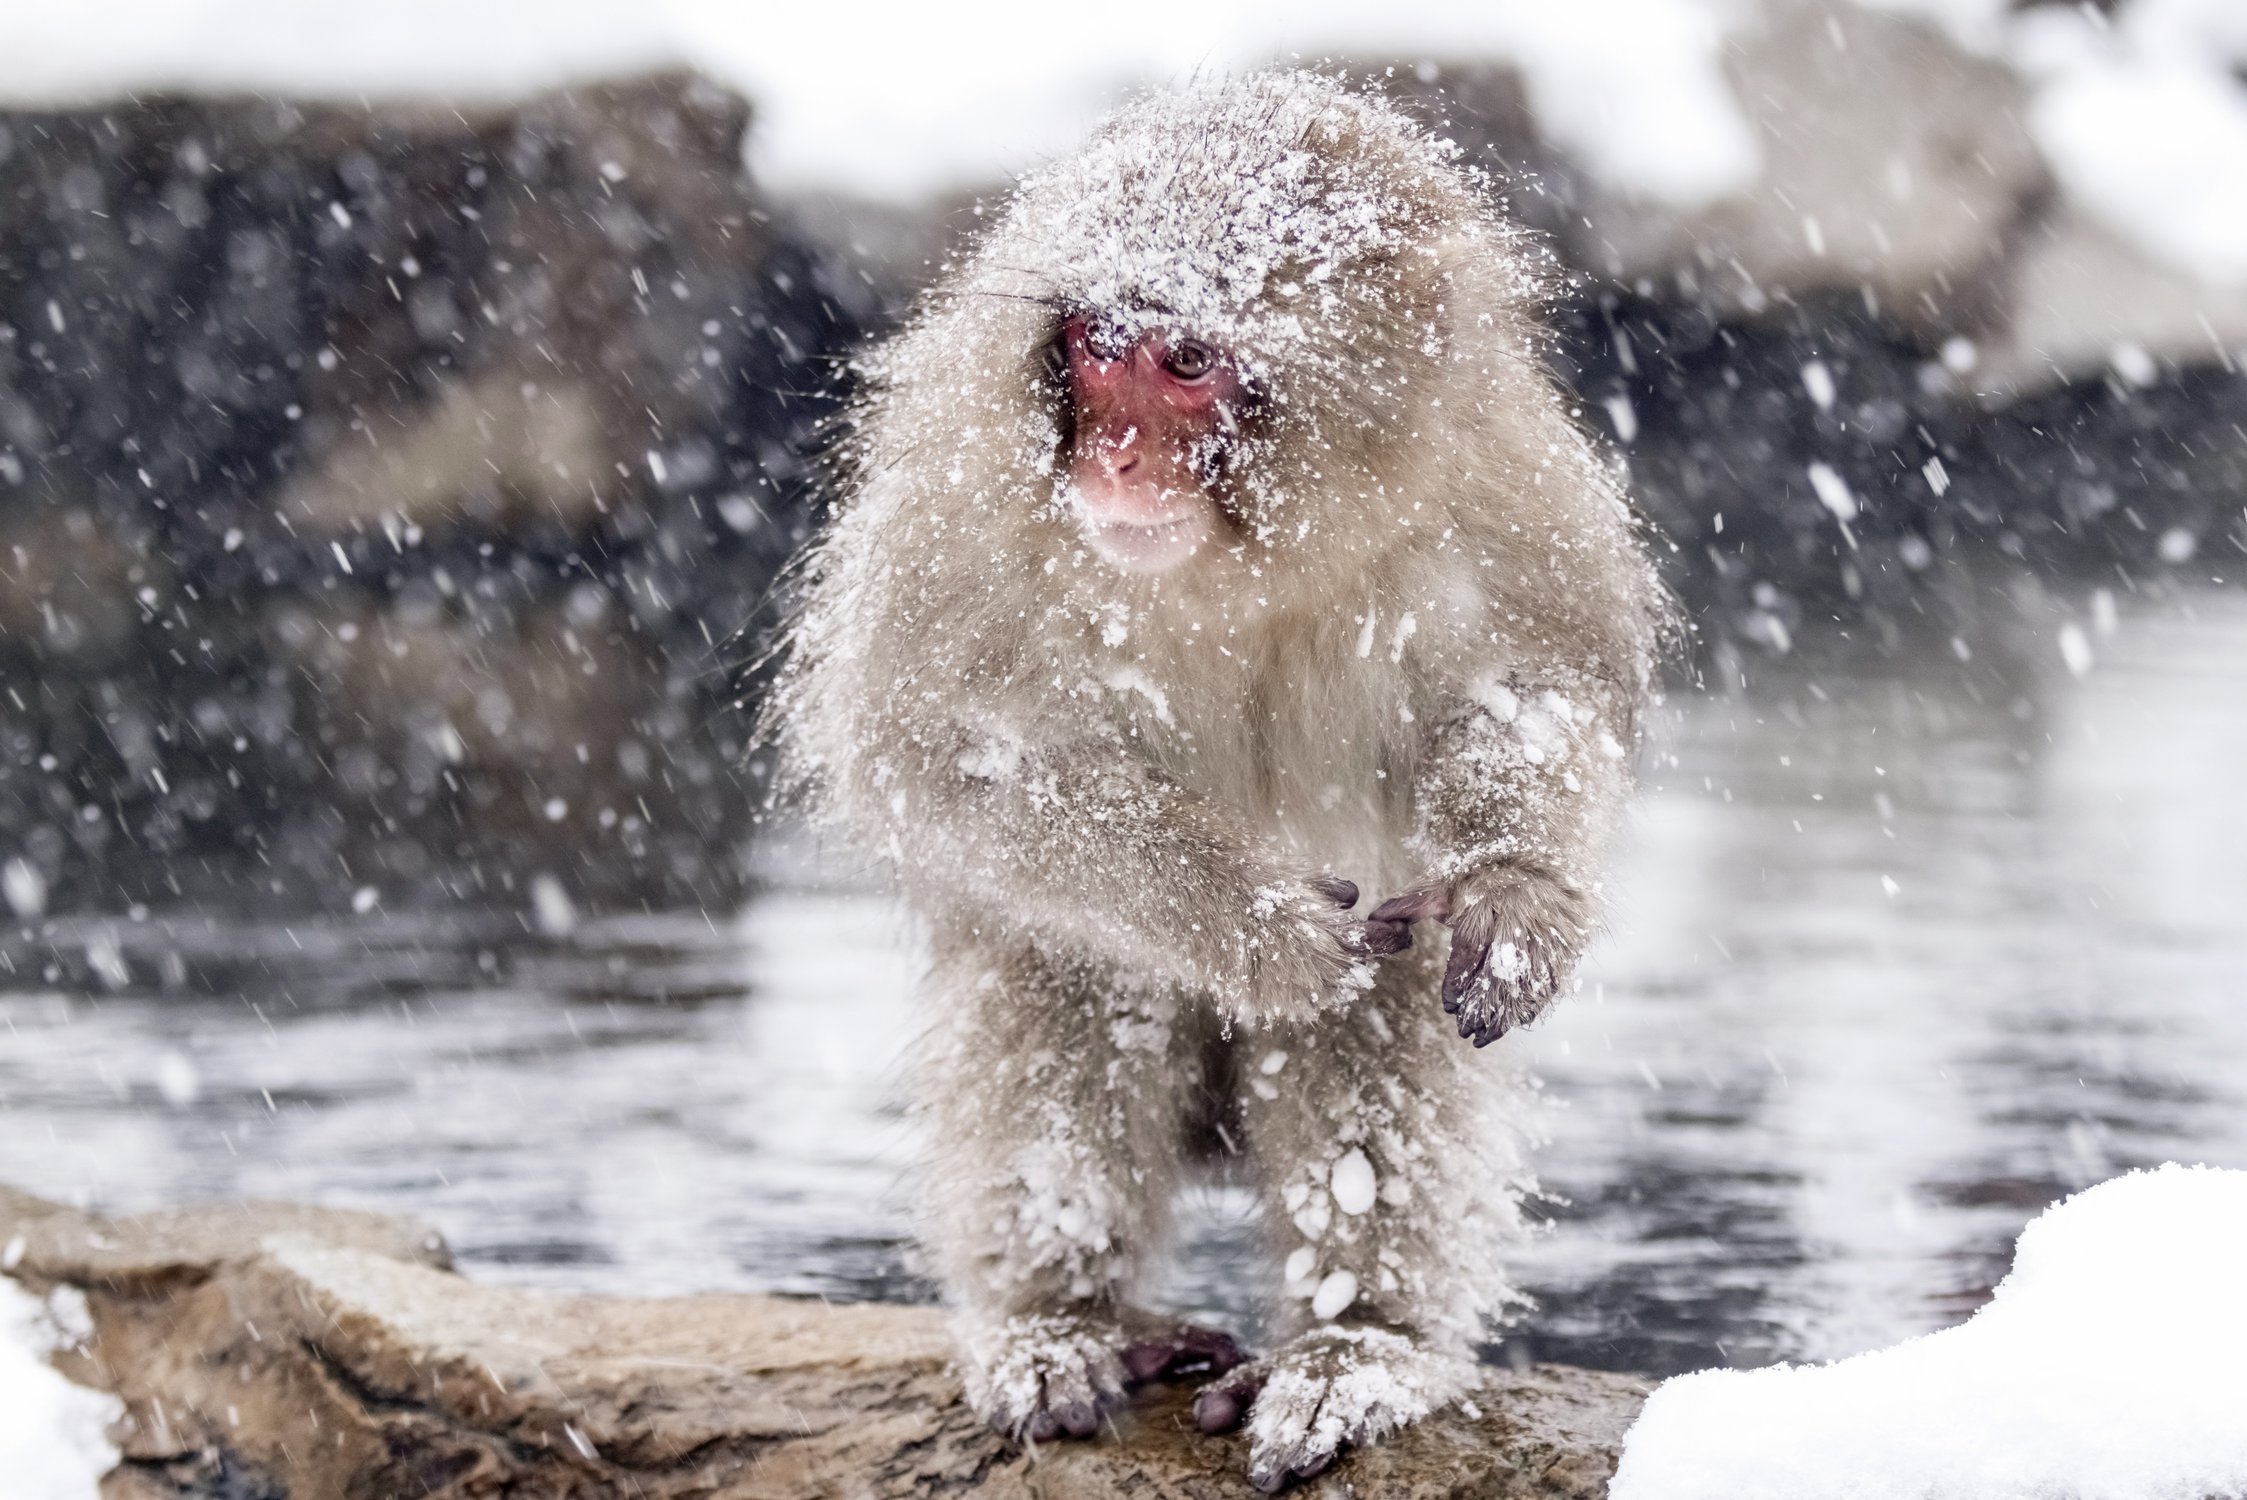 Хитрые обезьяны используют телефонные провода, чтобы не морозить ноги в снегу